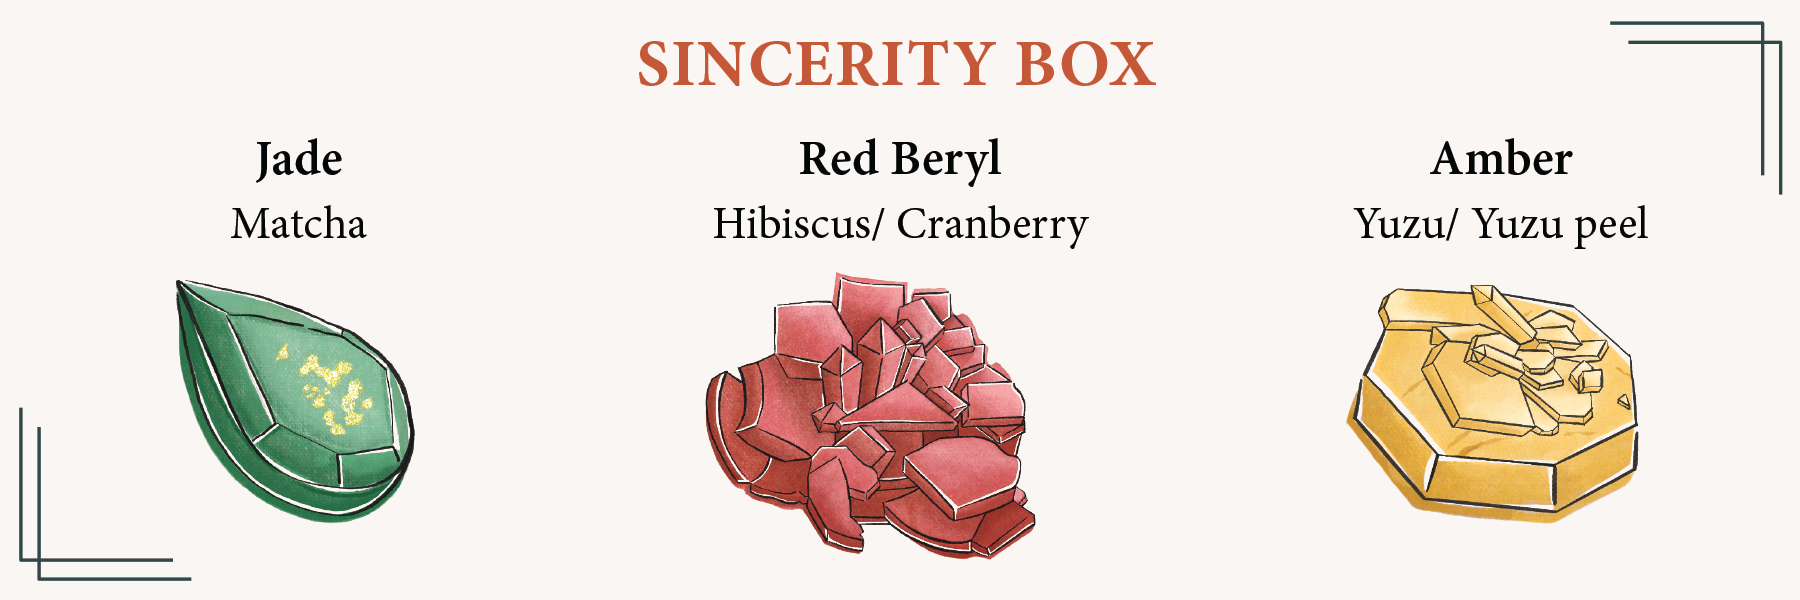 Sincerity box (3pcs of Crystal Treats)